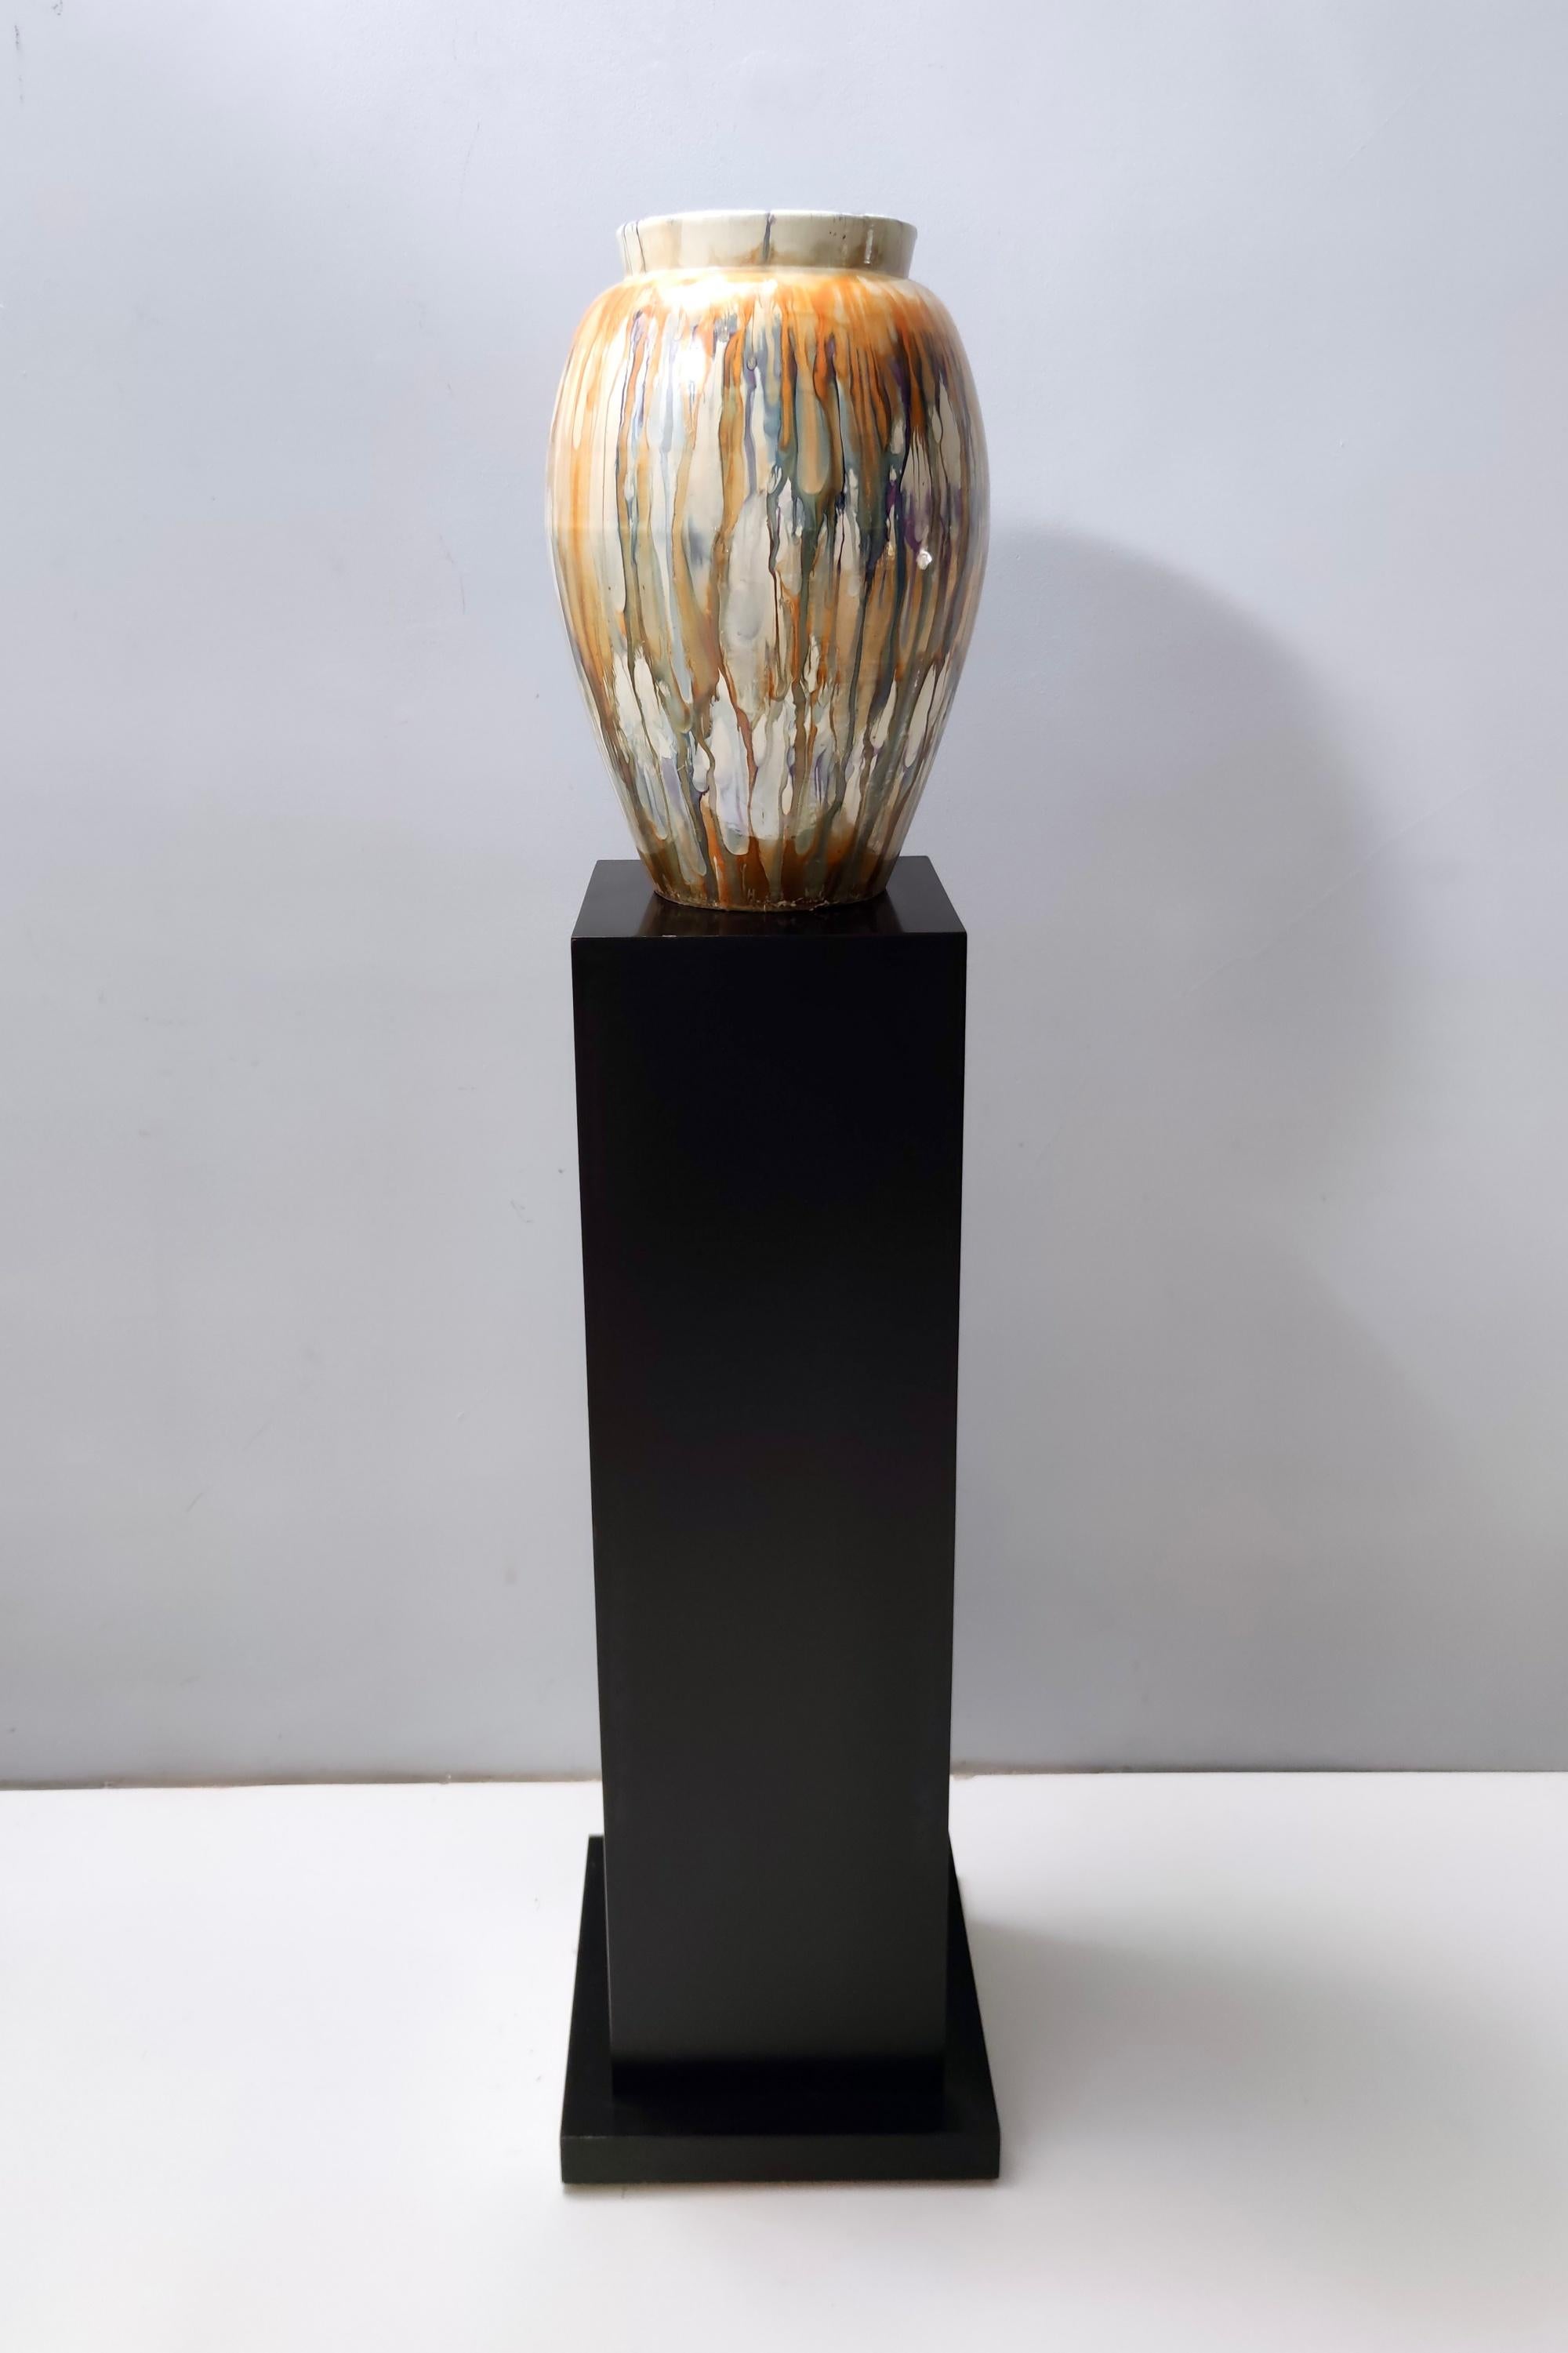 Hergestellt in Italien, 1940er - 1950er Jahre.
Diese Vase aus lackiertem Steingut ist von Pasquinucci, Le ceramiche di Pisa, geprägt. 
Da es sich um ein Vintage-Stück handelt, kann es leichte Gebrauchsspuren aufweisen, aber es ist in einem